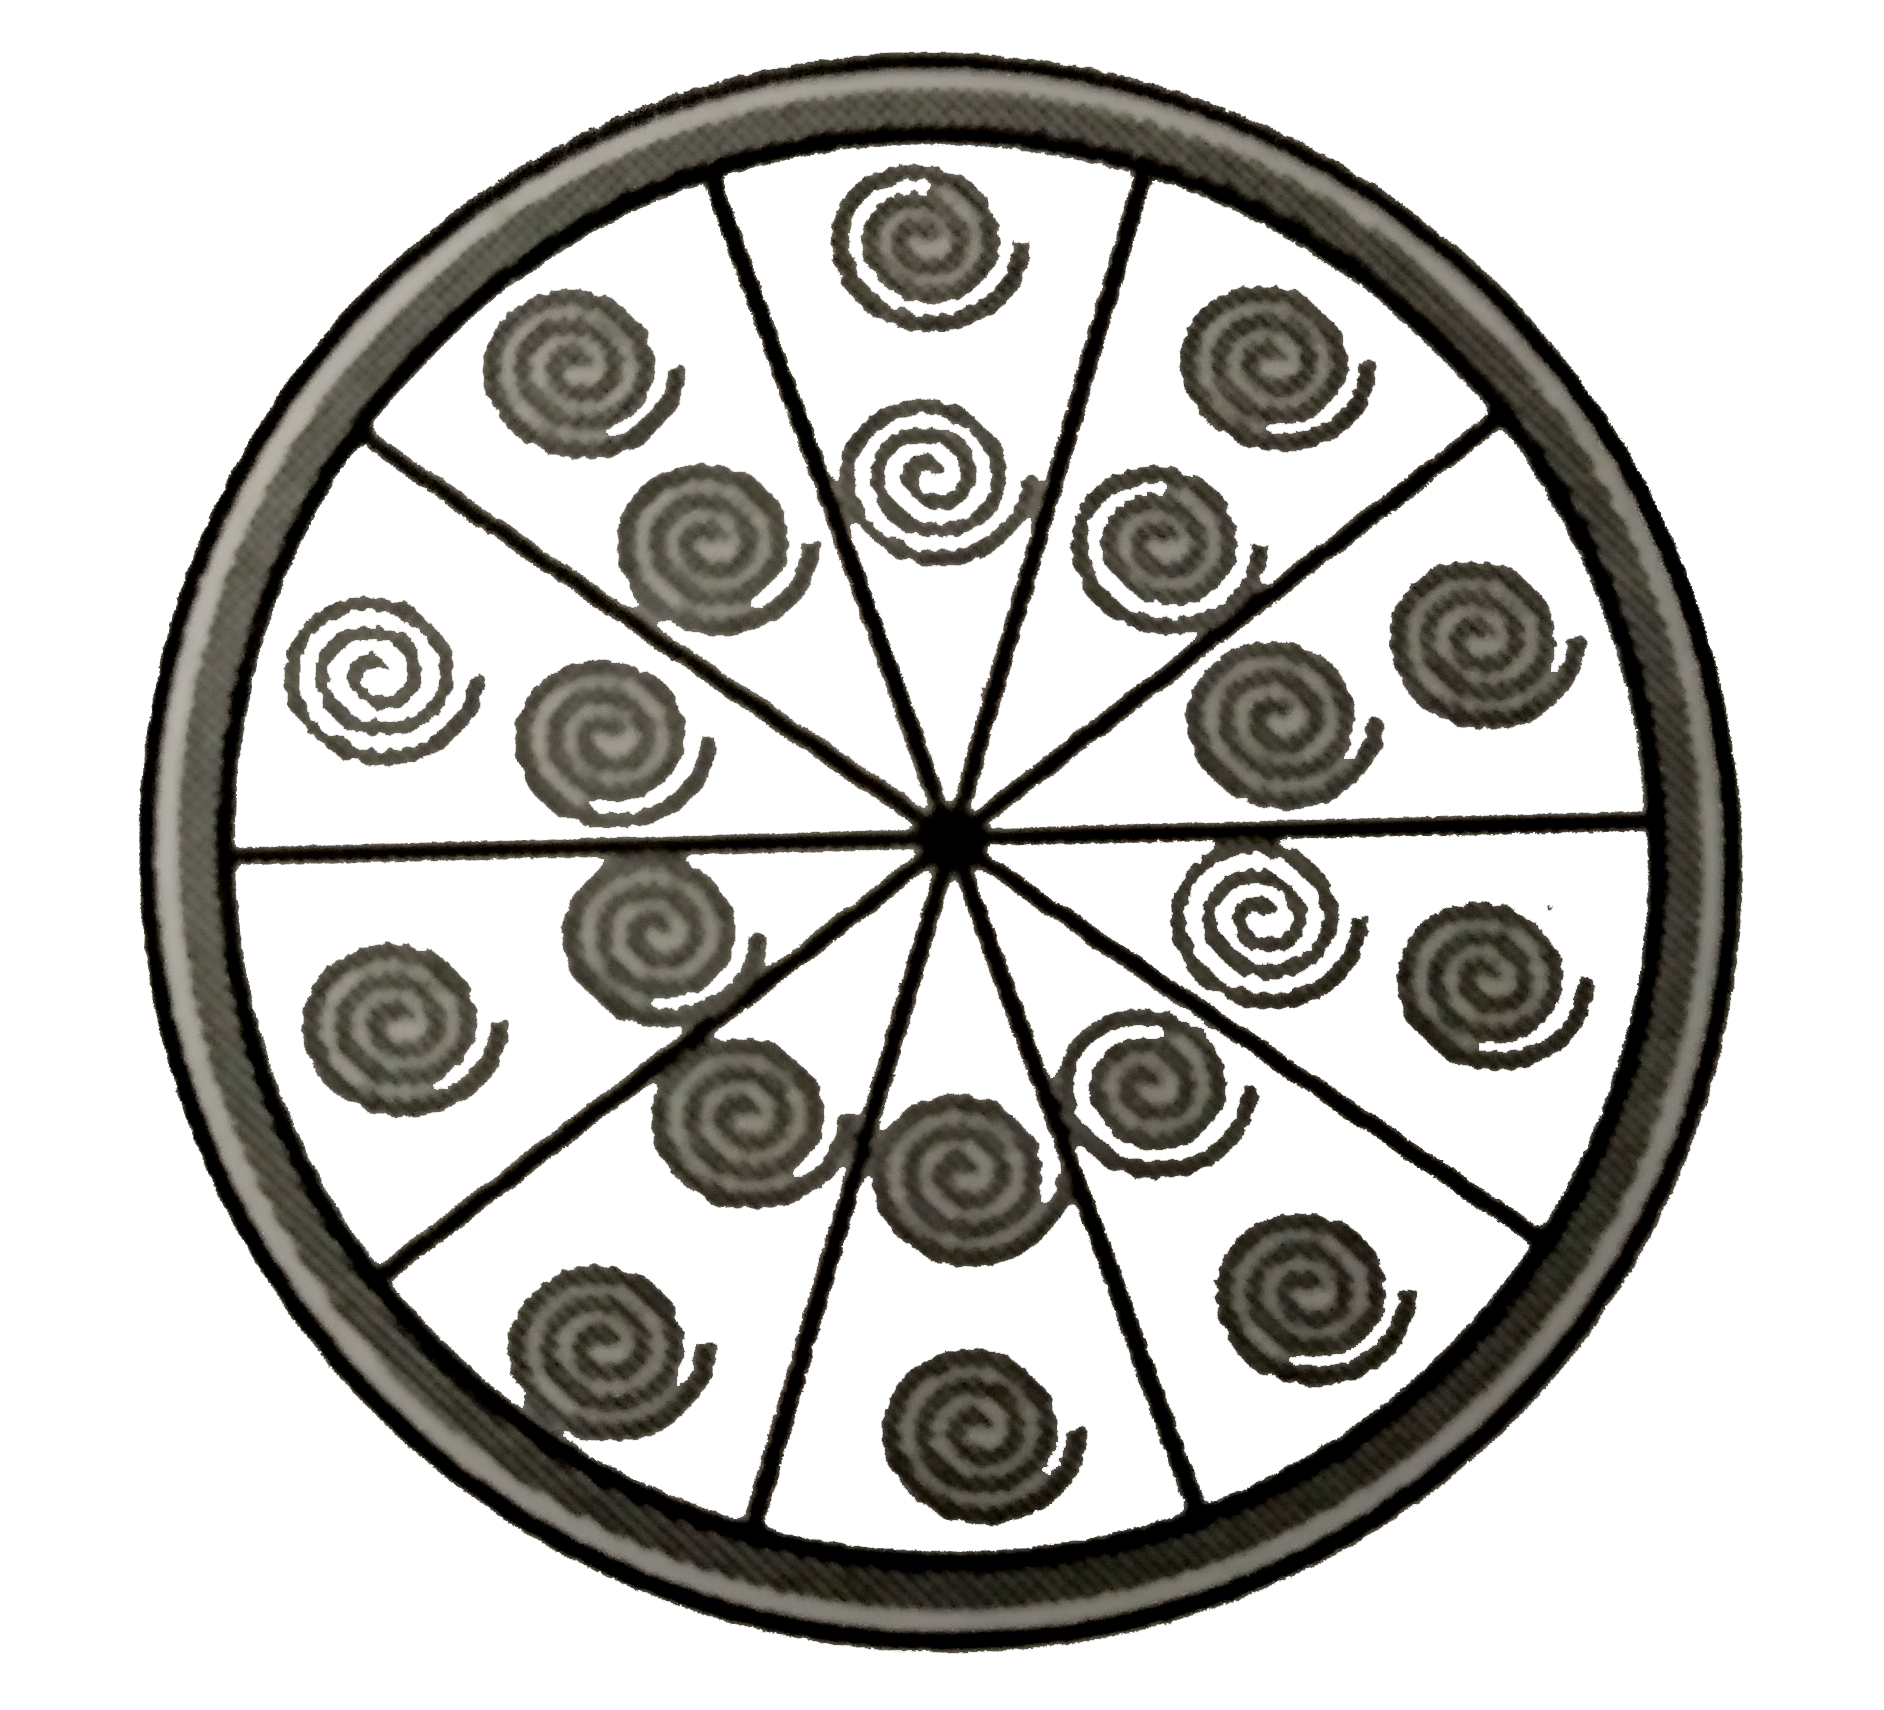 एक वृत्ताकार ब्रूच को चांदी के तार से बनाया जाता है जिसका व्यास 35 मिमी है। तार को वृत्त के 5 व्यासों को बनाने में भी प्रयुक्त किया गया है जो उसे 10 बराबर त्रिज्यखंडों मे विभाजित करता है जैसा कि आकृति में दर्शाया गया है। तो ज्ञात कीजिए   (i)  कुल वांछित चांदी के तार की लंबाई   (ii)  ब्रूच के प्रत्येक त्रिज्यखंड का क्षेत्रफल